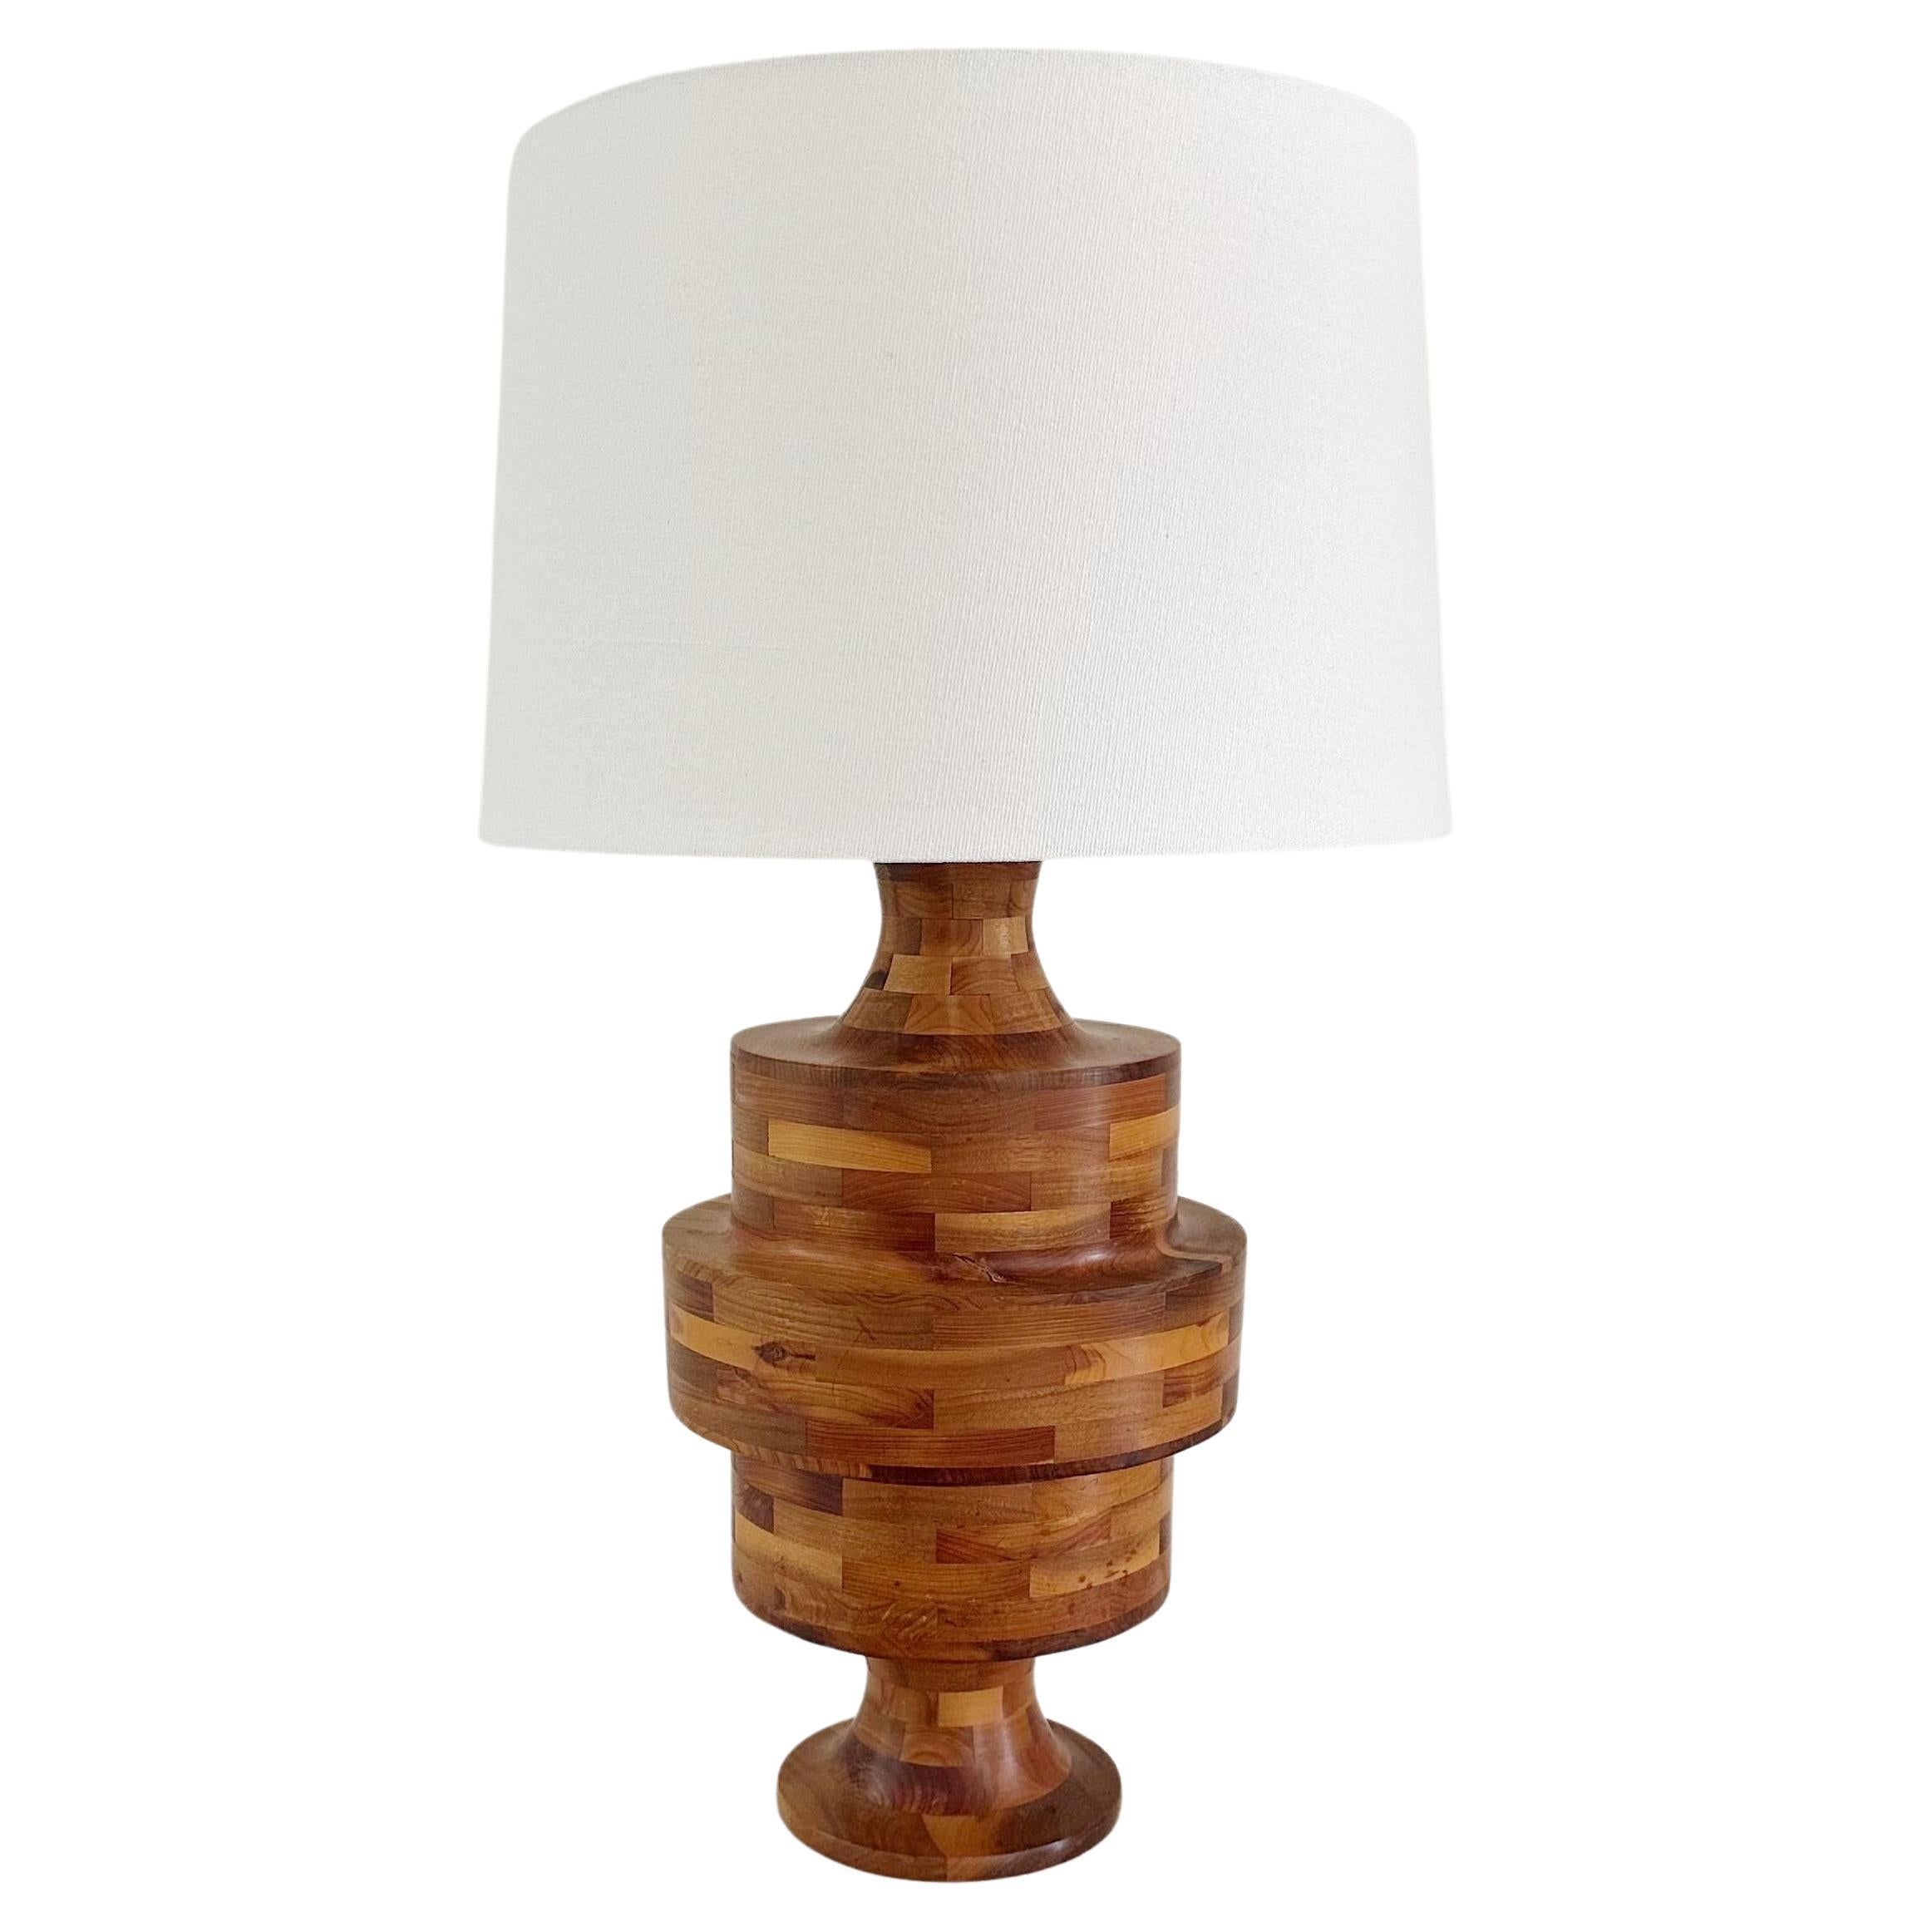 Lampe en marqueterie vintage tournée à la main en forme de tour, fabriquée à partir de différents bois 